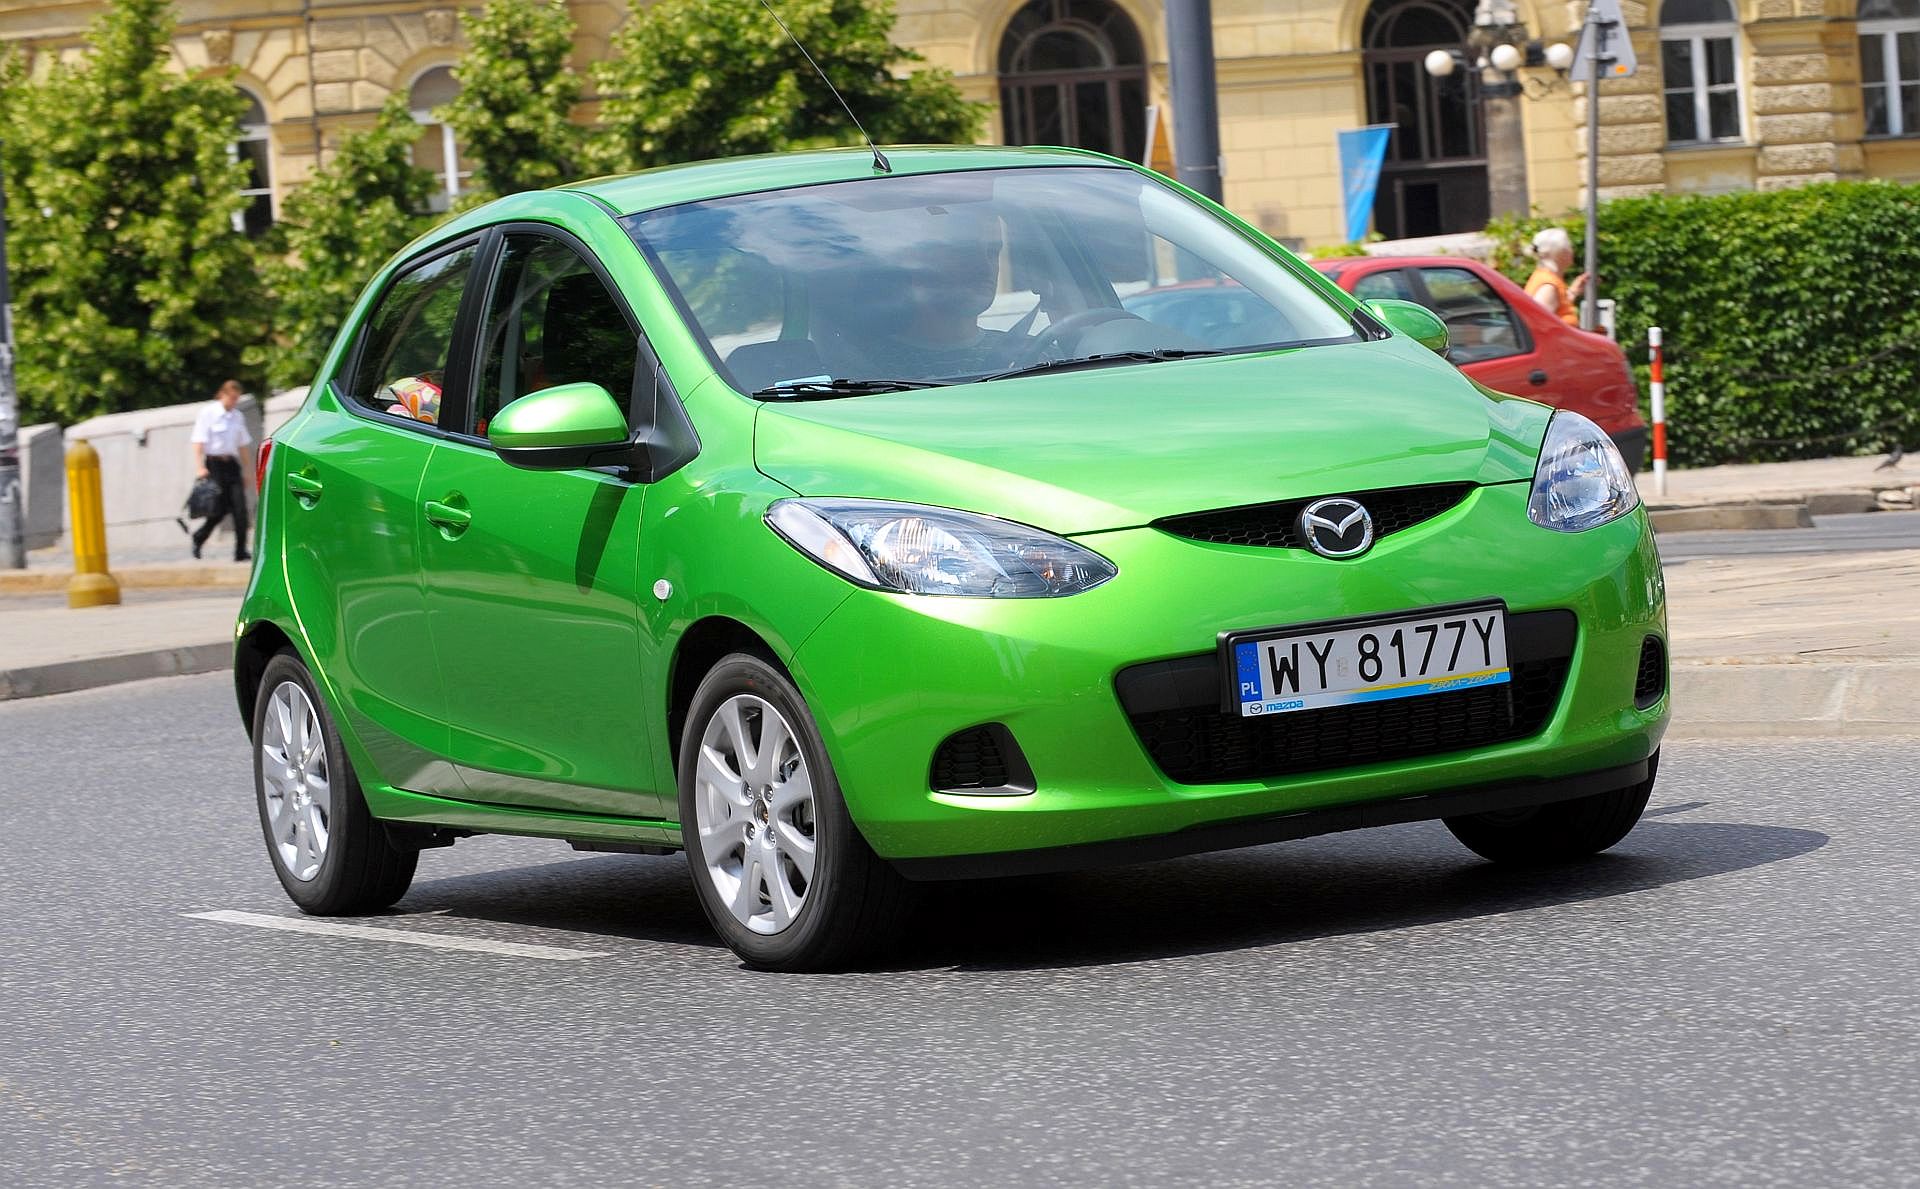 Używana Mazda 2 Ii (2007-2014) - Opinie, Dane Techniczne, Typowe Usterki